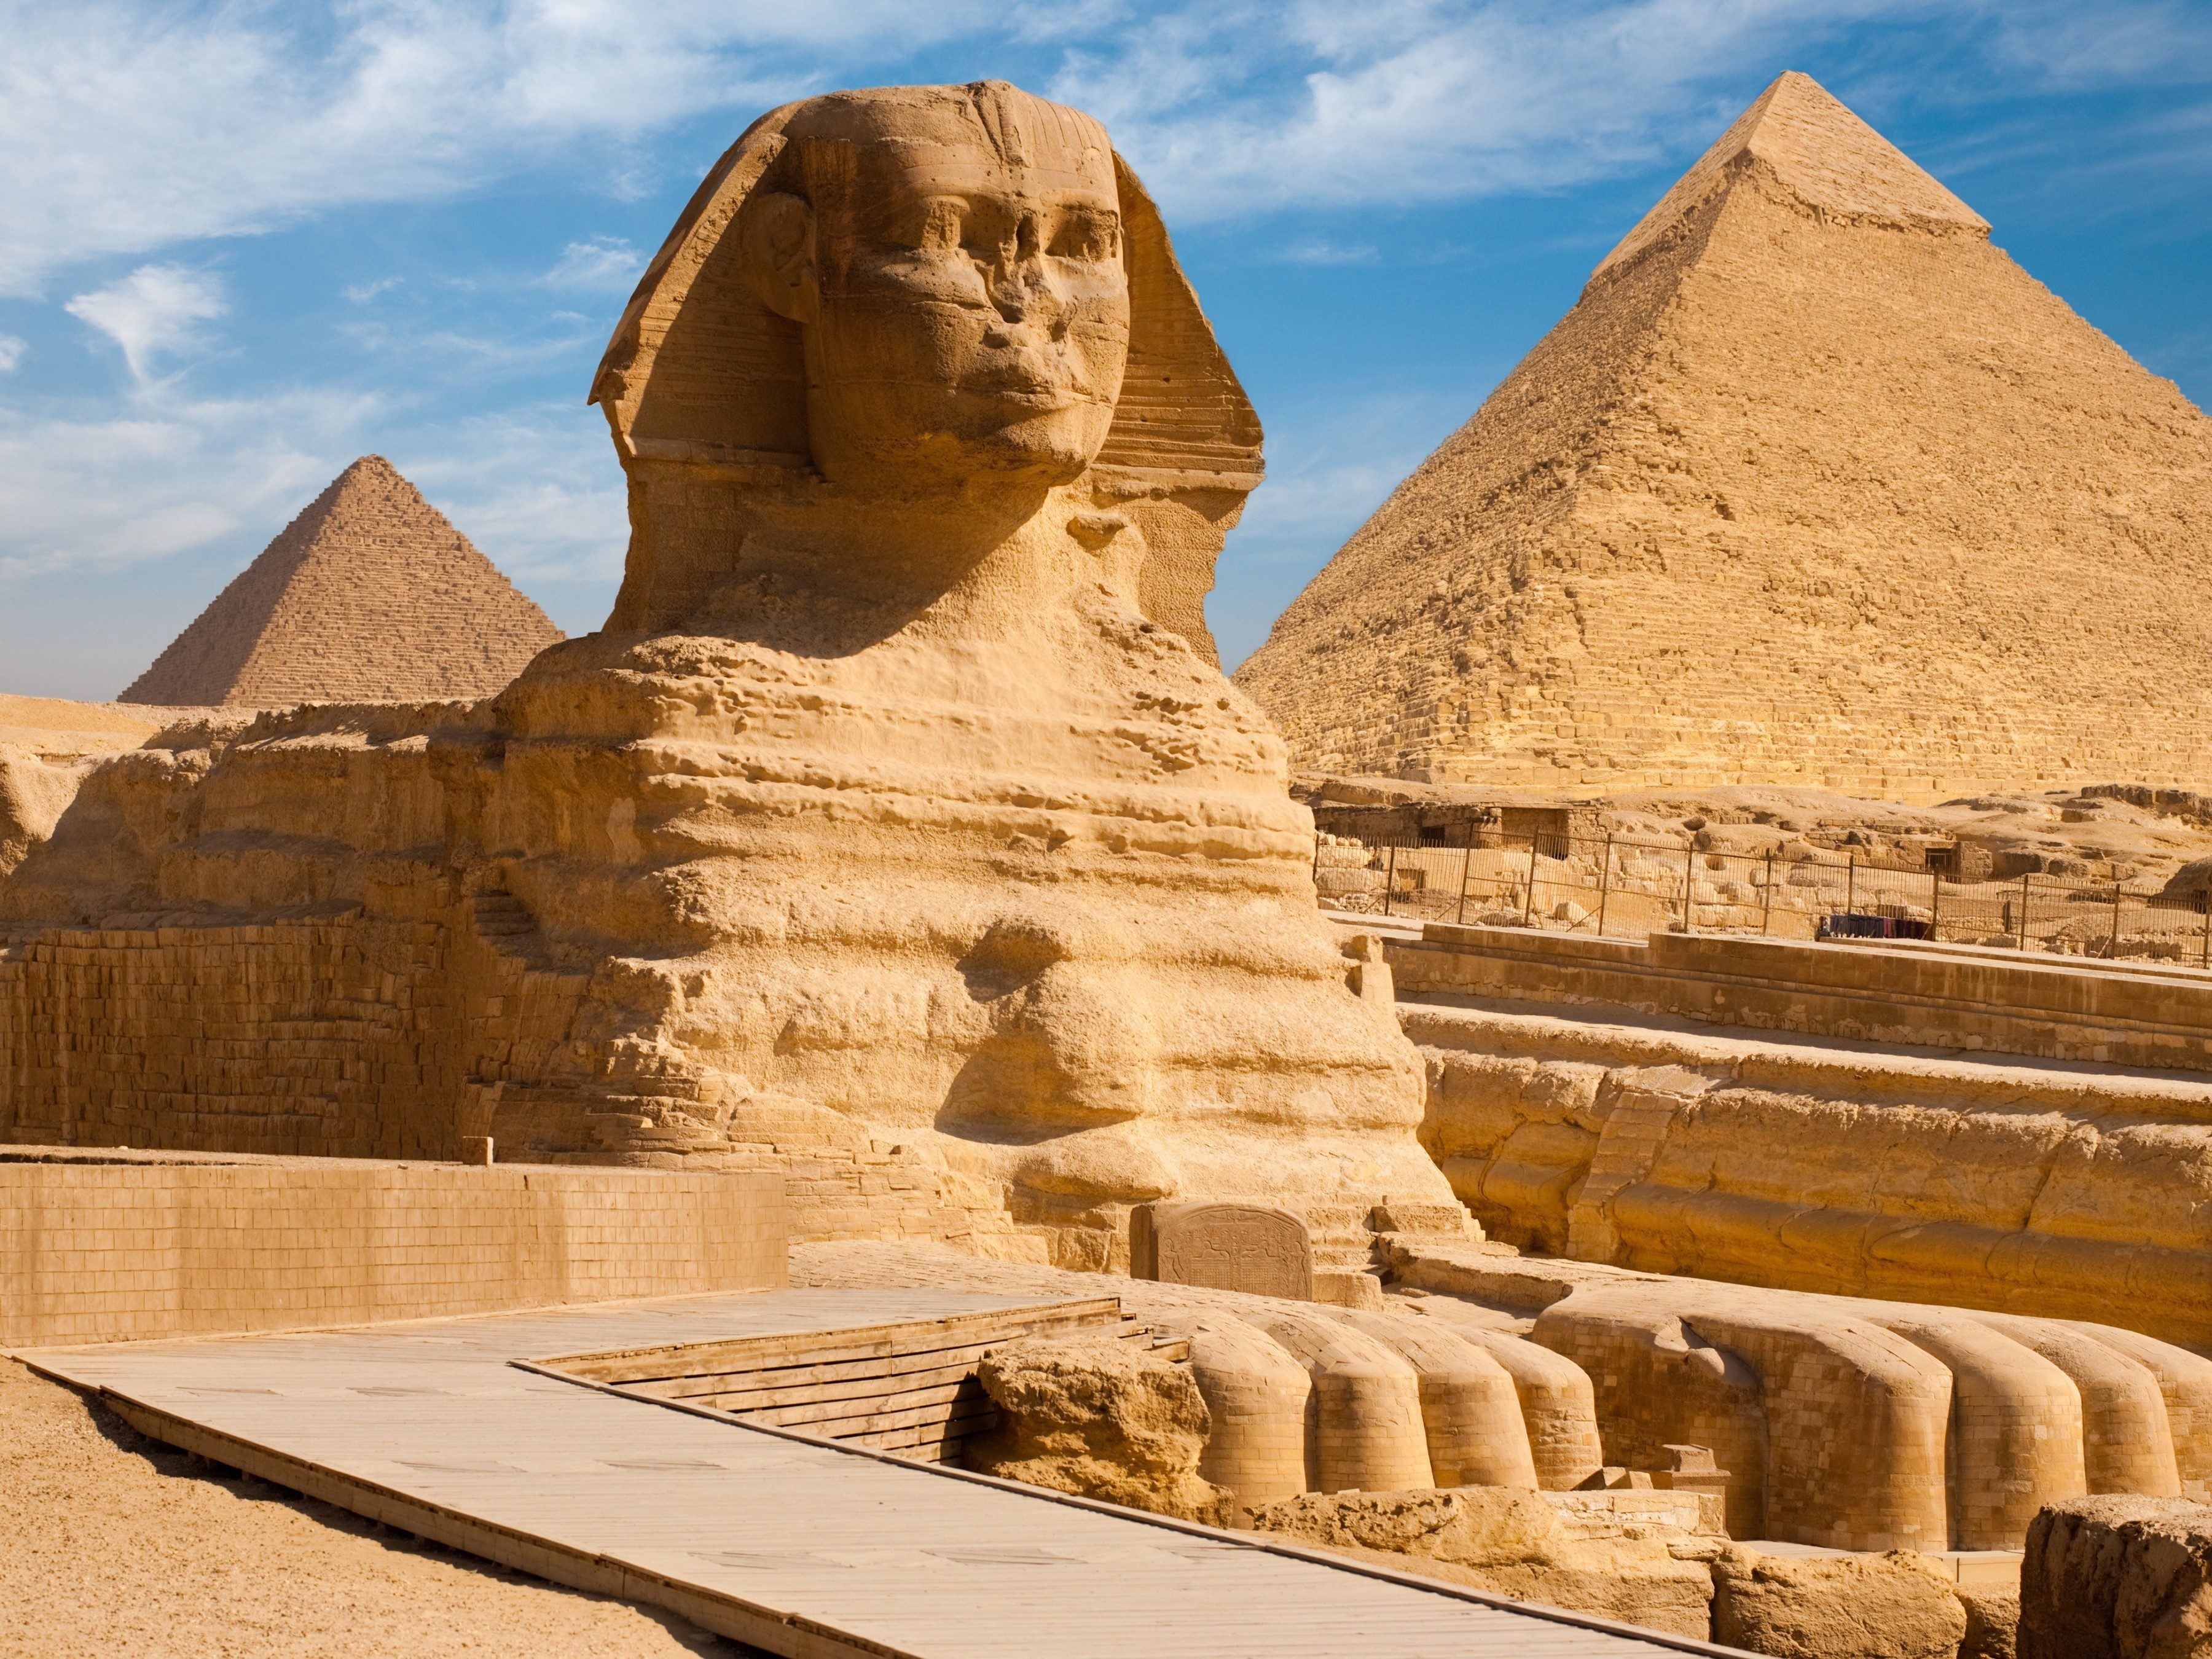 10. Egypt